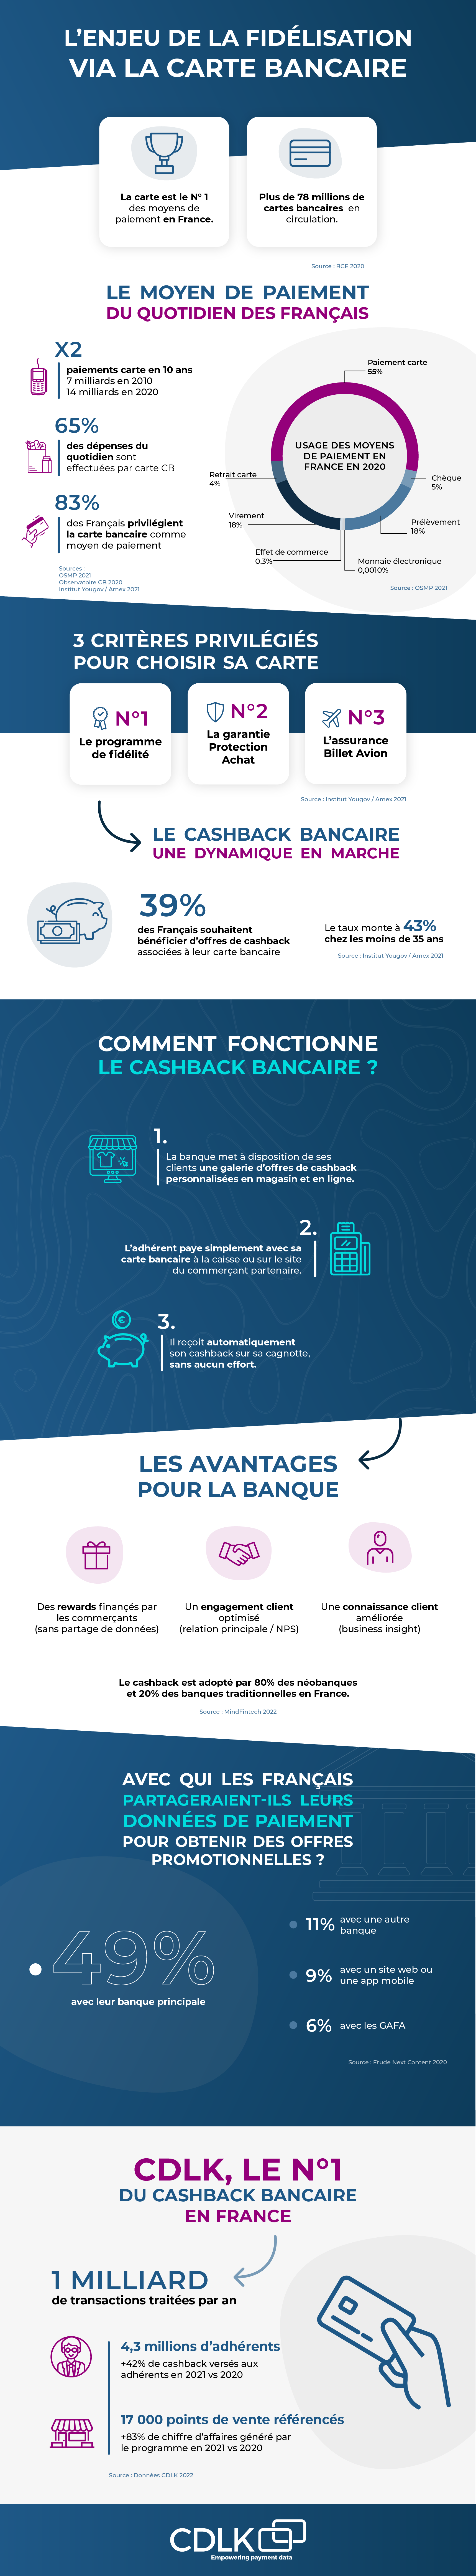 CDLK-Infographie-Cashback-Banque